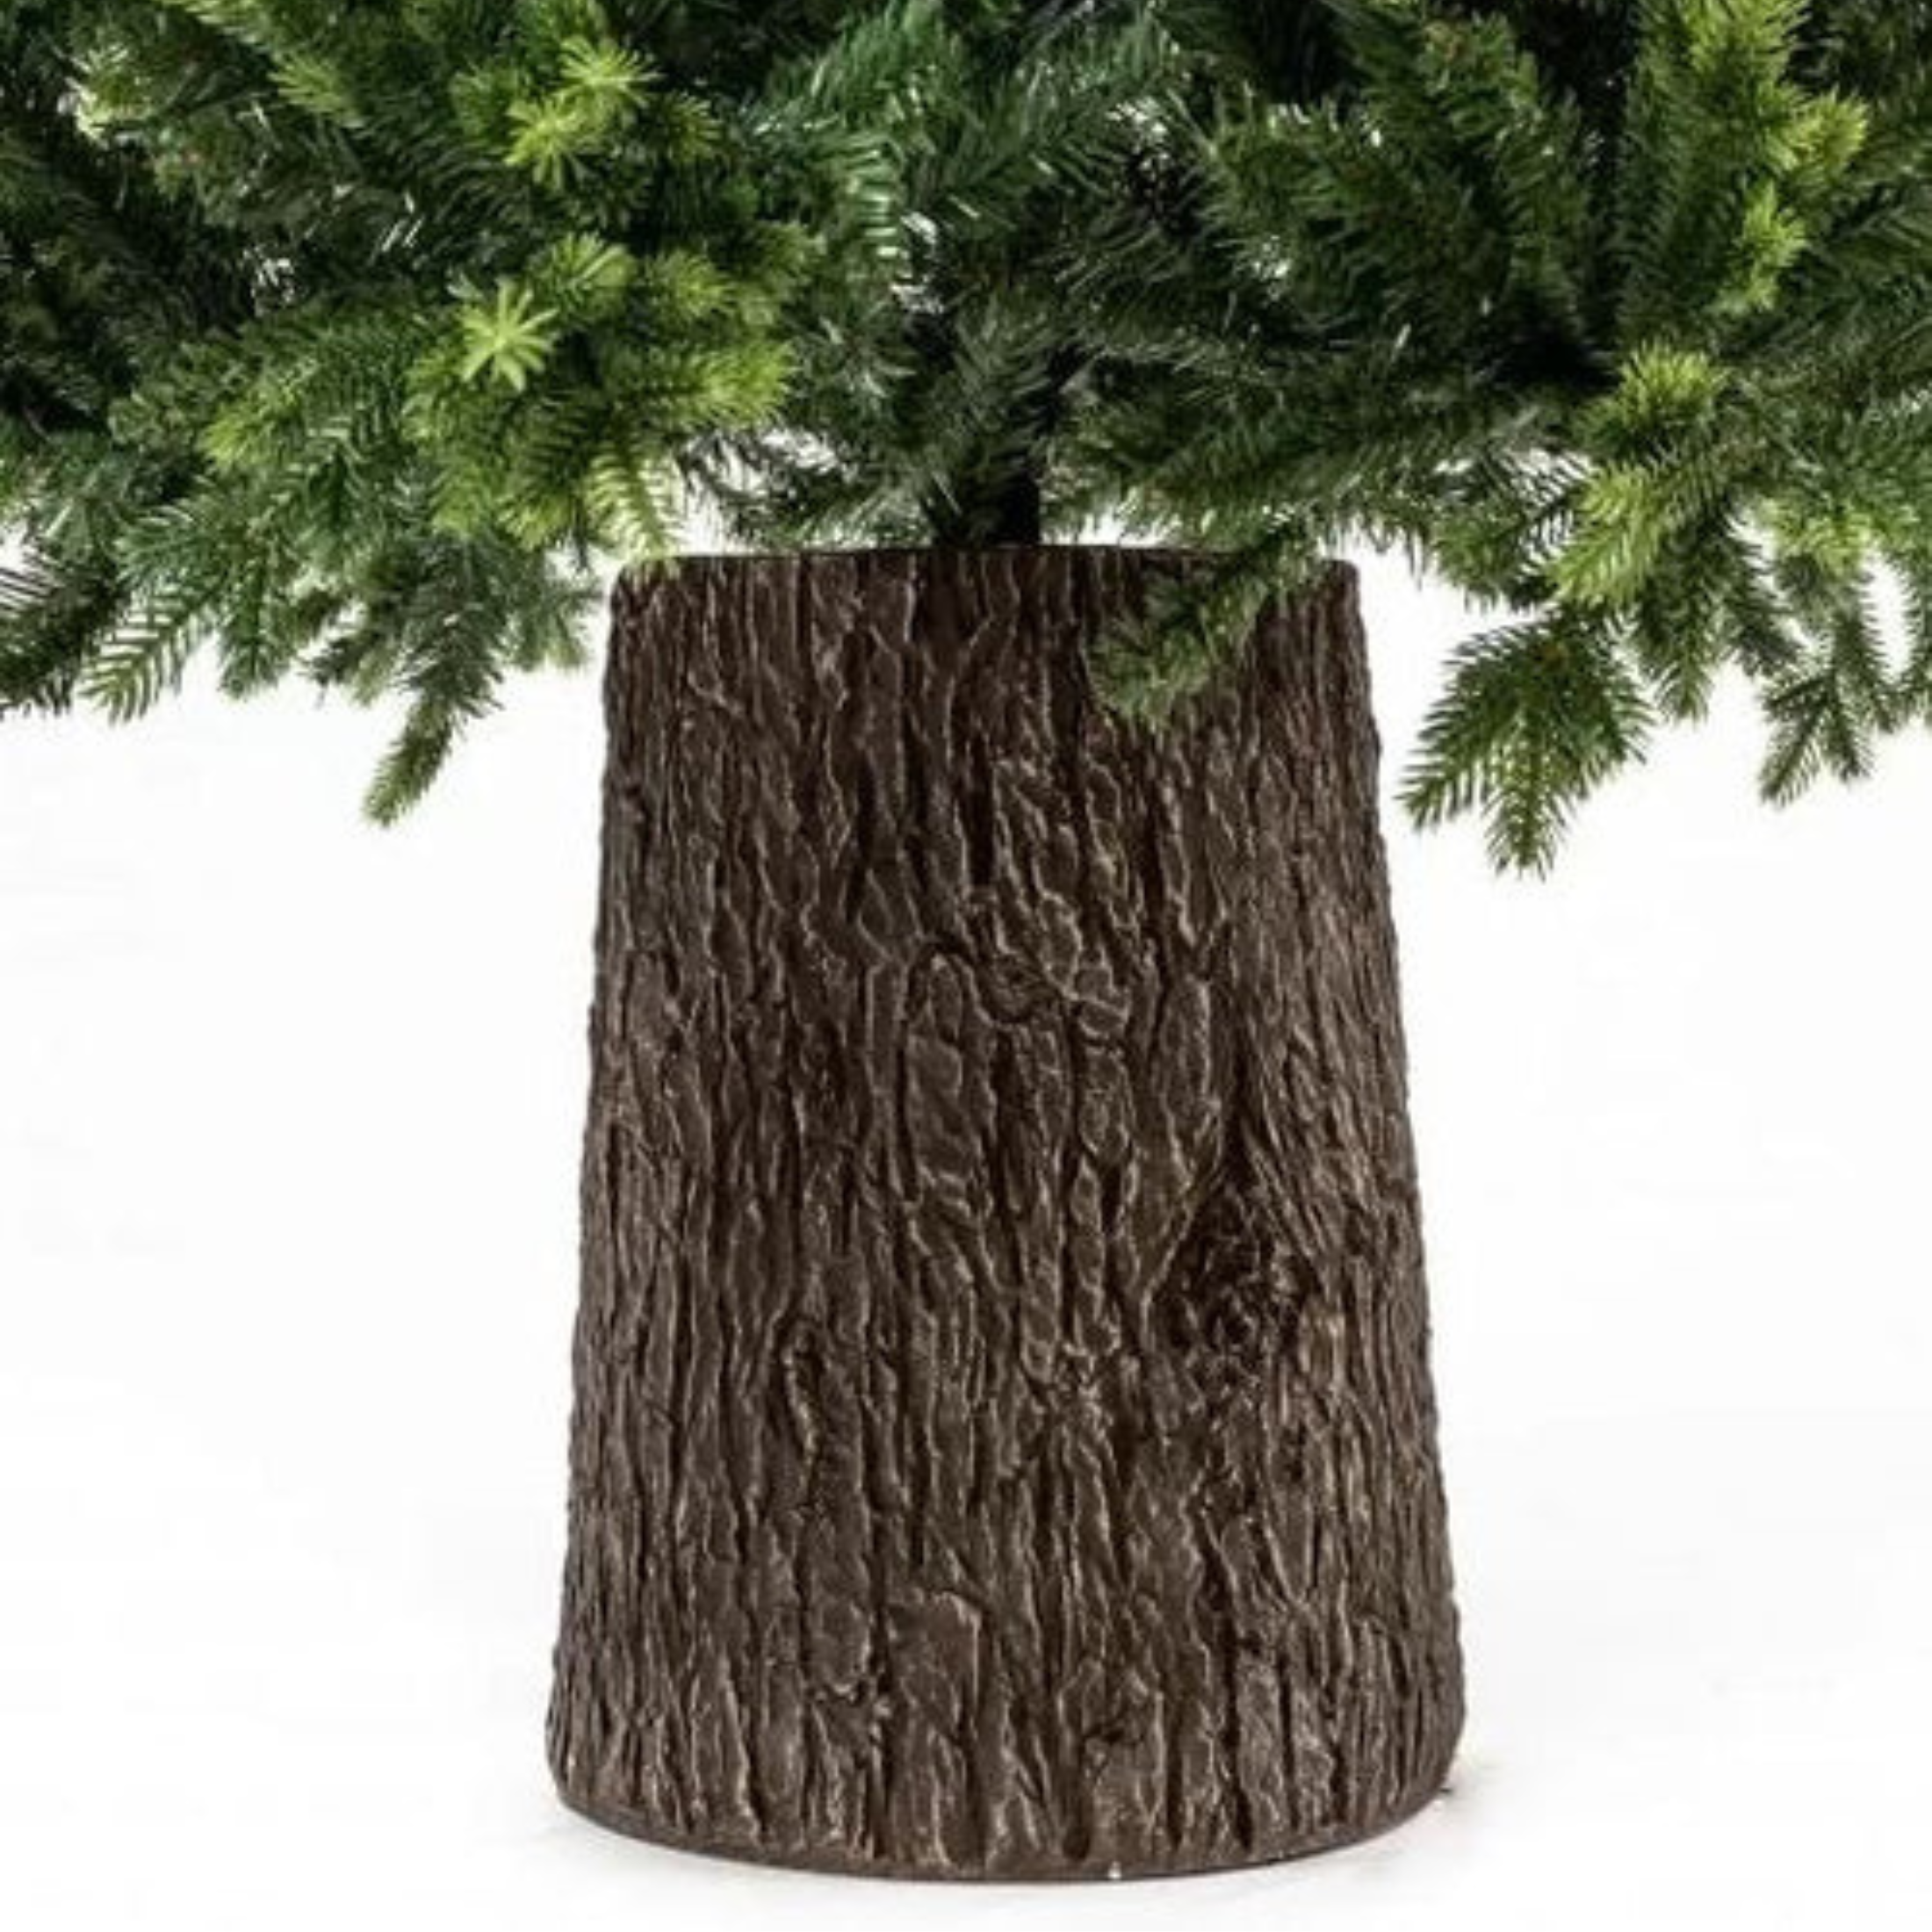 Árbol de Navidad con tronco "Reno" en PE Real Touch Effect